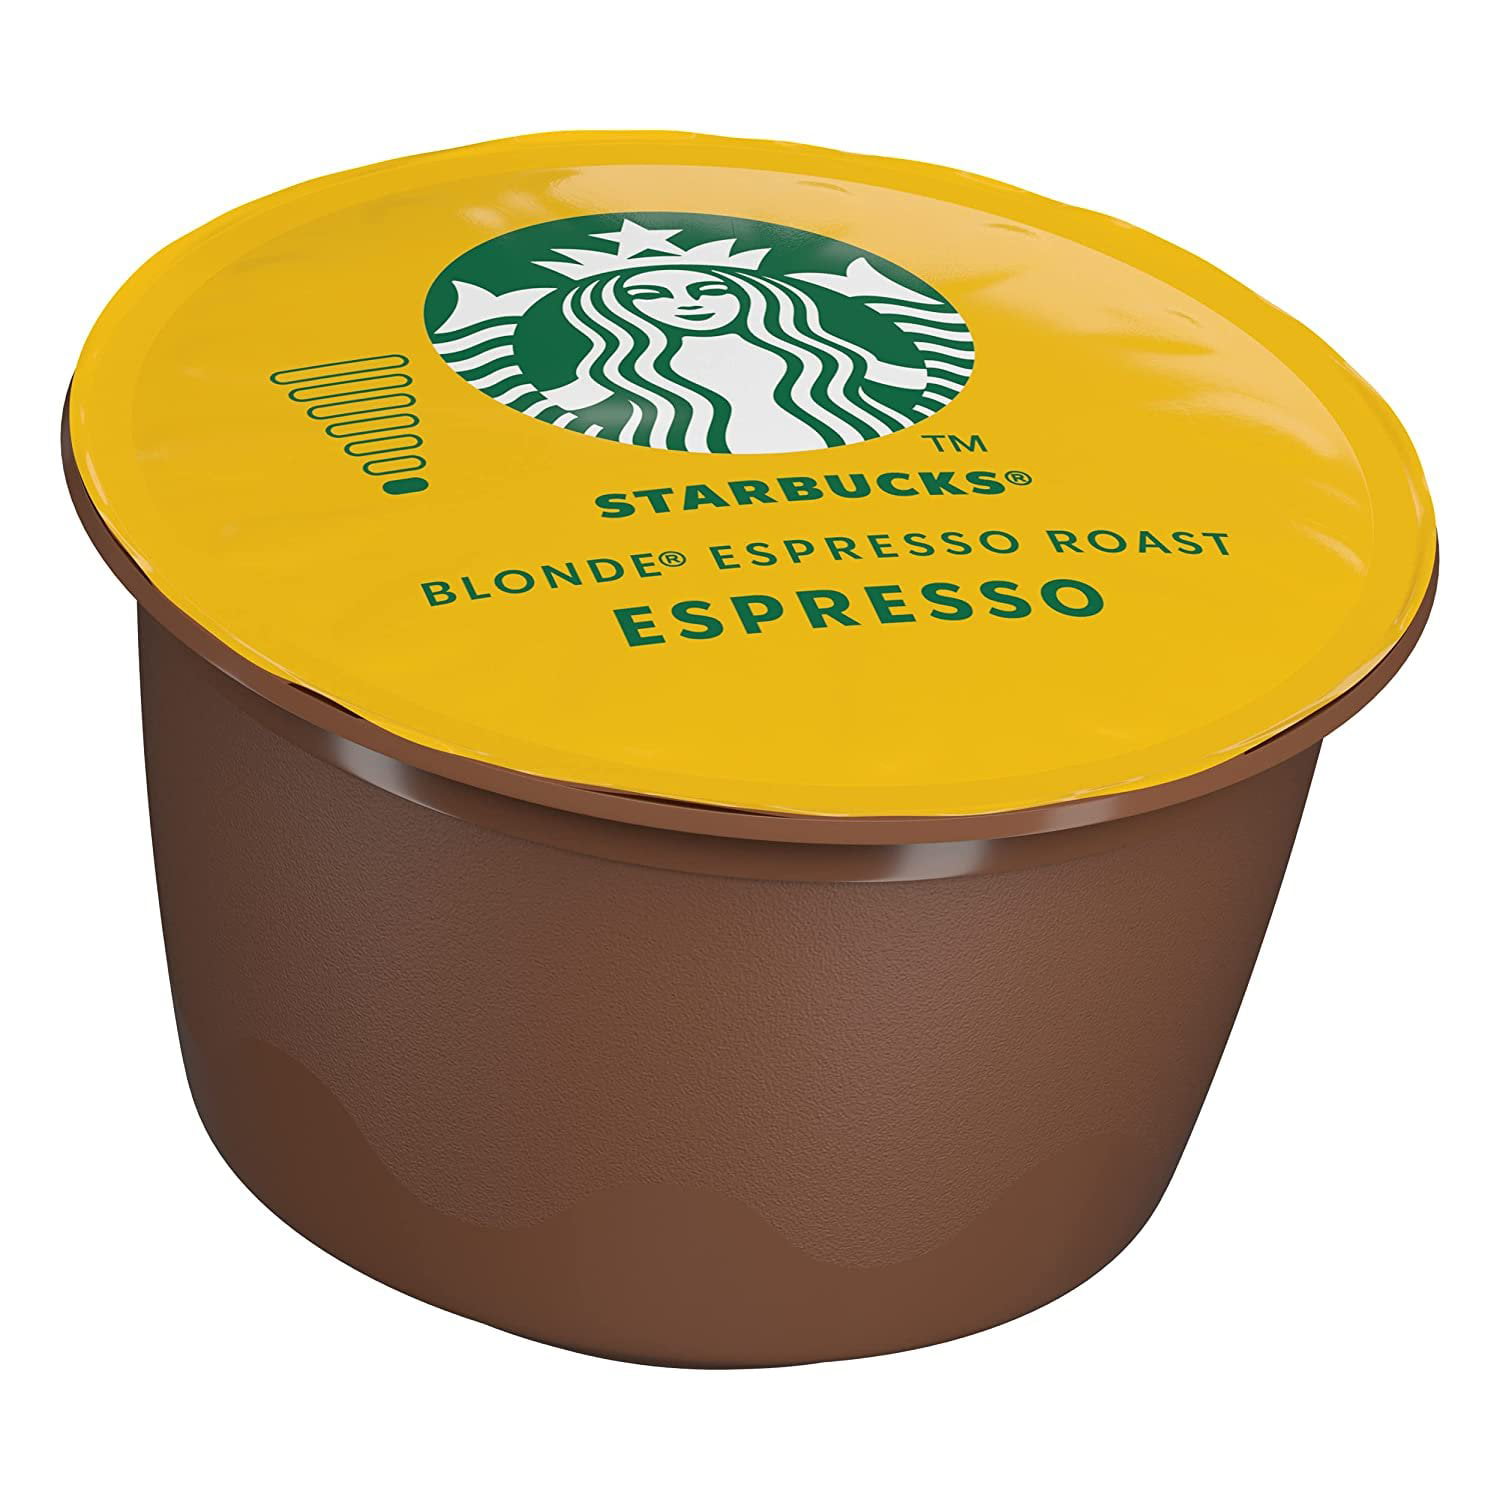 Starbucks Caramel Macchiato di Nescafè Dolce Gusto - Saida Shop Online